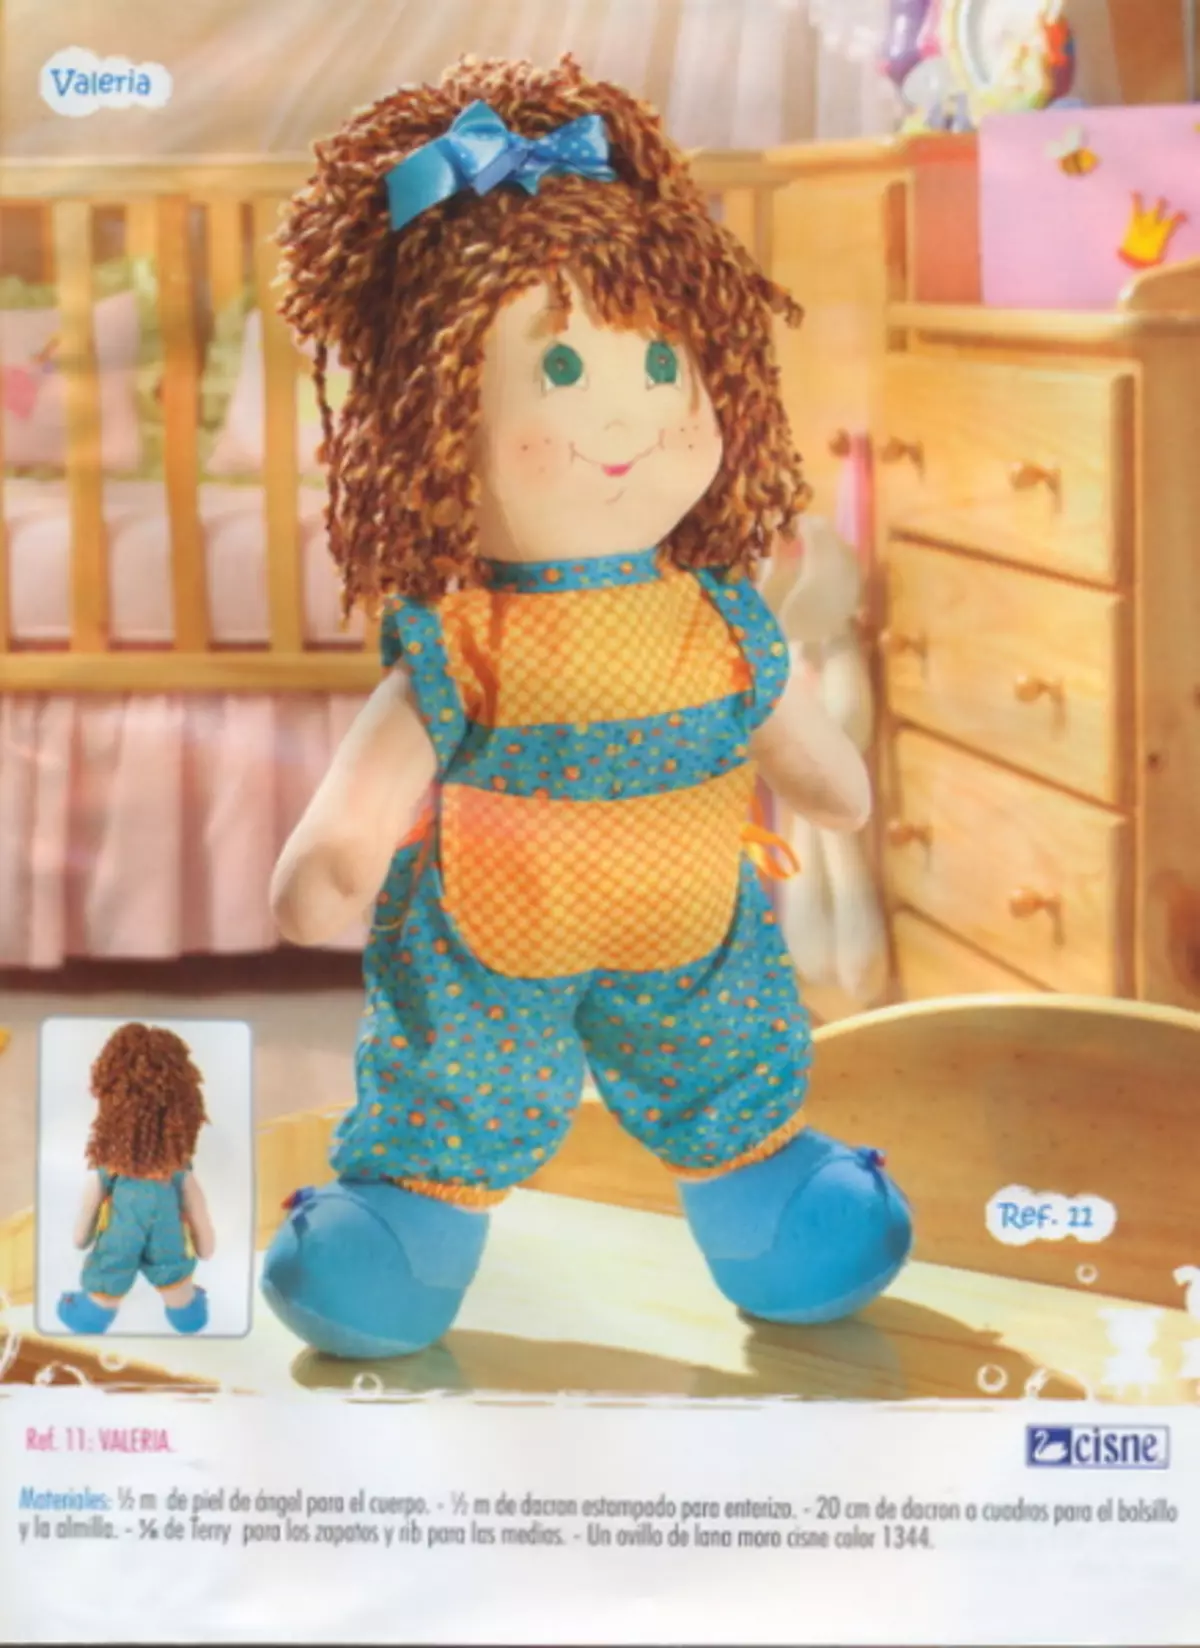 Quili - 135. Majalah dengan corak boneka tekstil